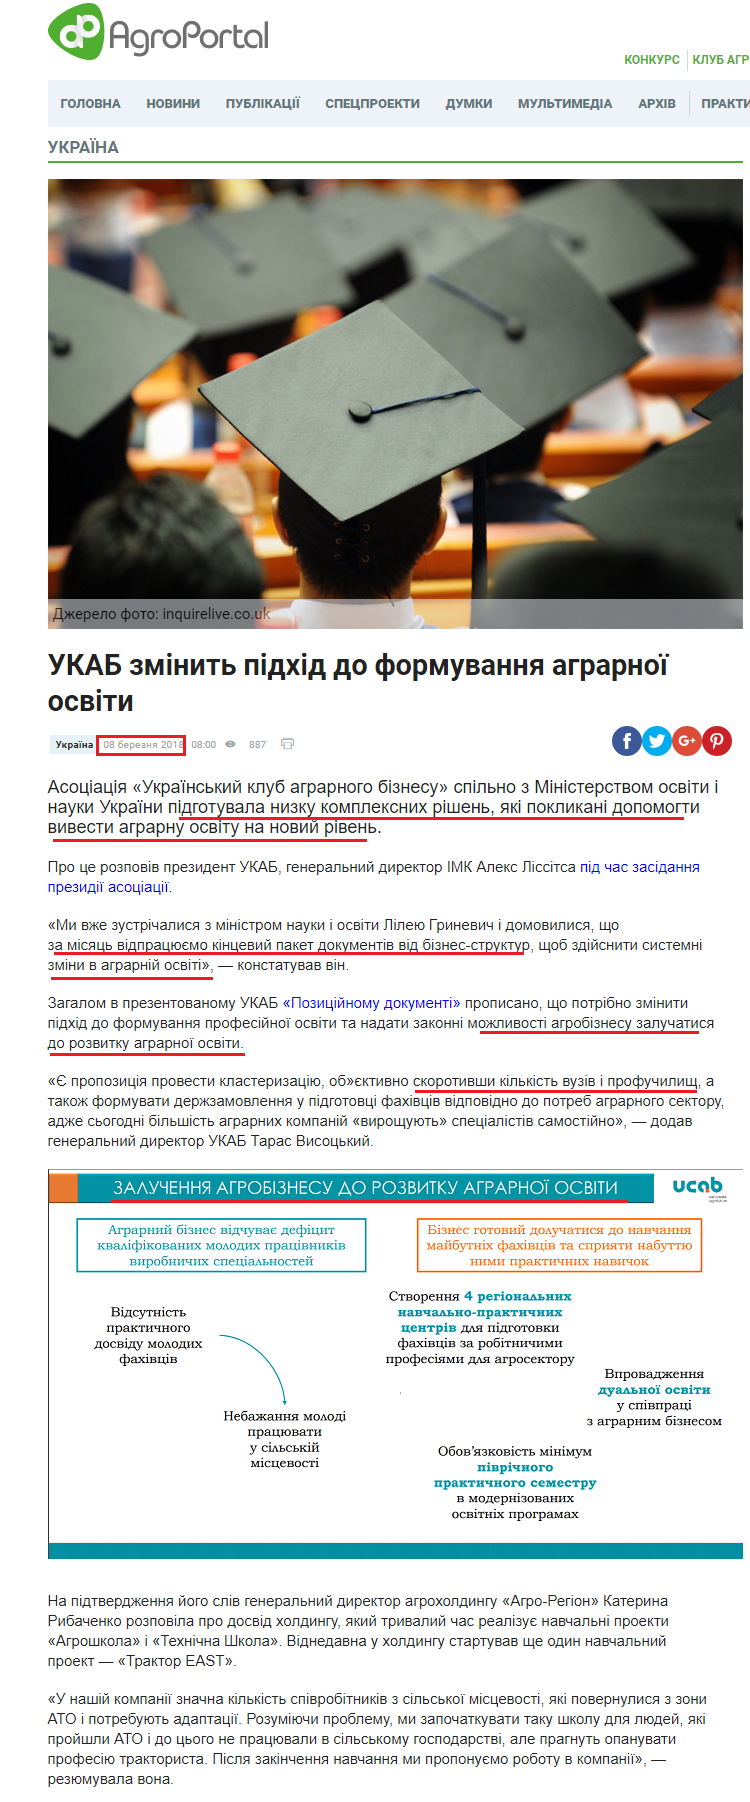 http://agroportal.ua/ua/news/ukraina/ukab-izmenit-podkhod-k-formirovaniyu-agrarnogo-obrazovaniya/